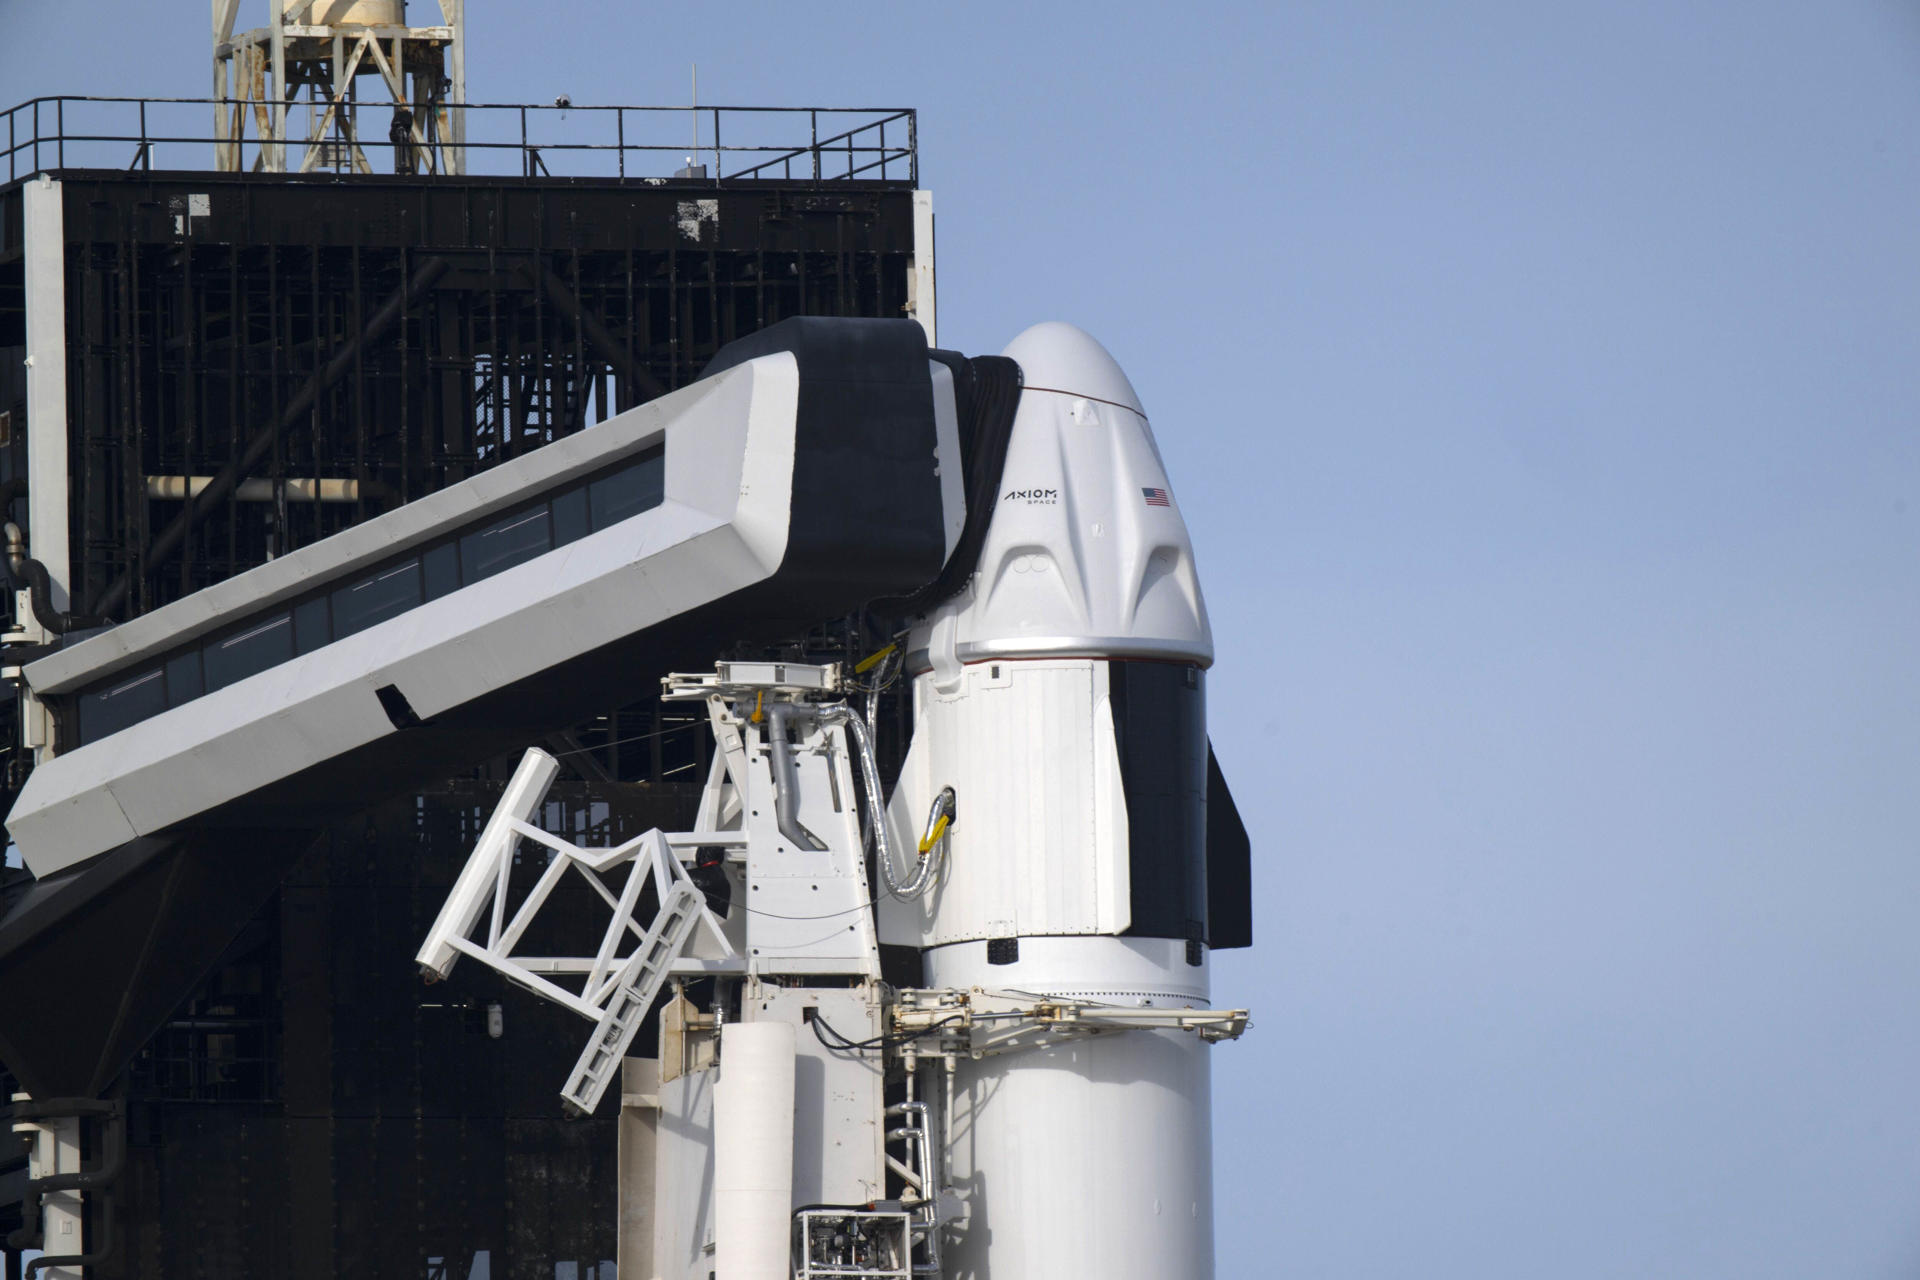 Fotografía cedida por la Agencia Espacial Europea (ESA) donde se muestra la cápsula Dragon instalada en lo alto del cohete Falcon 9, que llevará la misión 3 (Ax-3) de Axiom a la Estación Espacial Internacional, mientras está posado en el Complejo de Lanzamiento 39A del Centro Espacial Kennedy de la NASA, en Cabo Cañaveral (Florida, EE.UU.). EFE/ESA/S. Corvaja